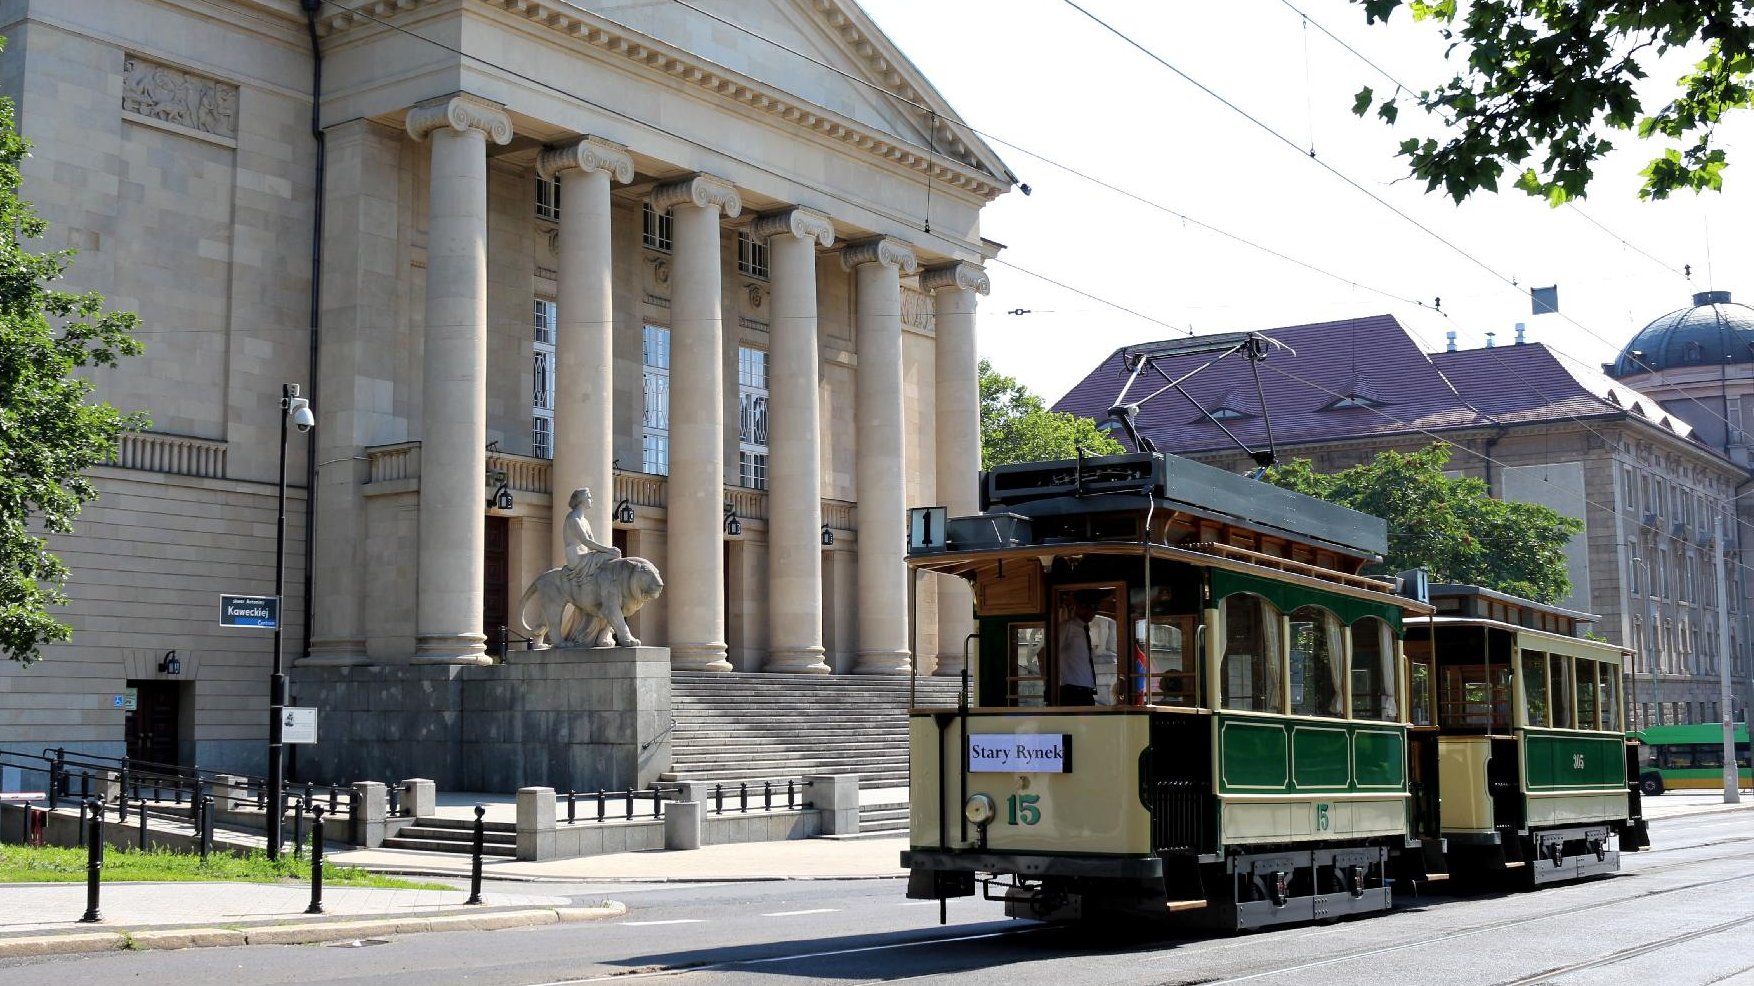 Na pierwszym planie widać historyczny tramwaj jadący ul. Fredry. W tle znajduje się budynek opery, fot. MPK.